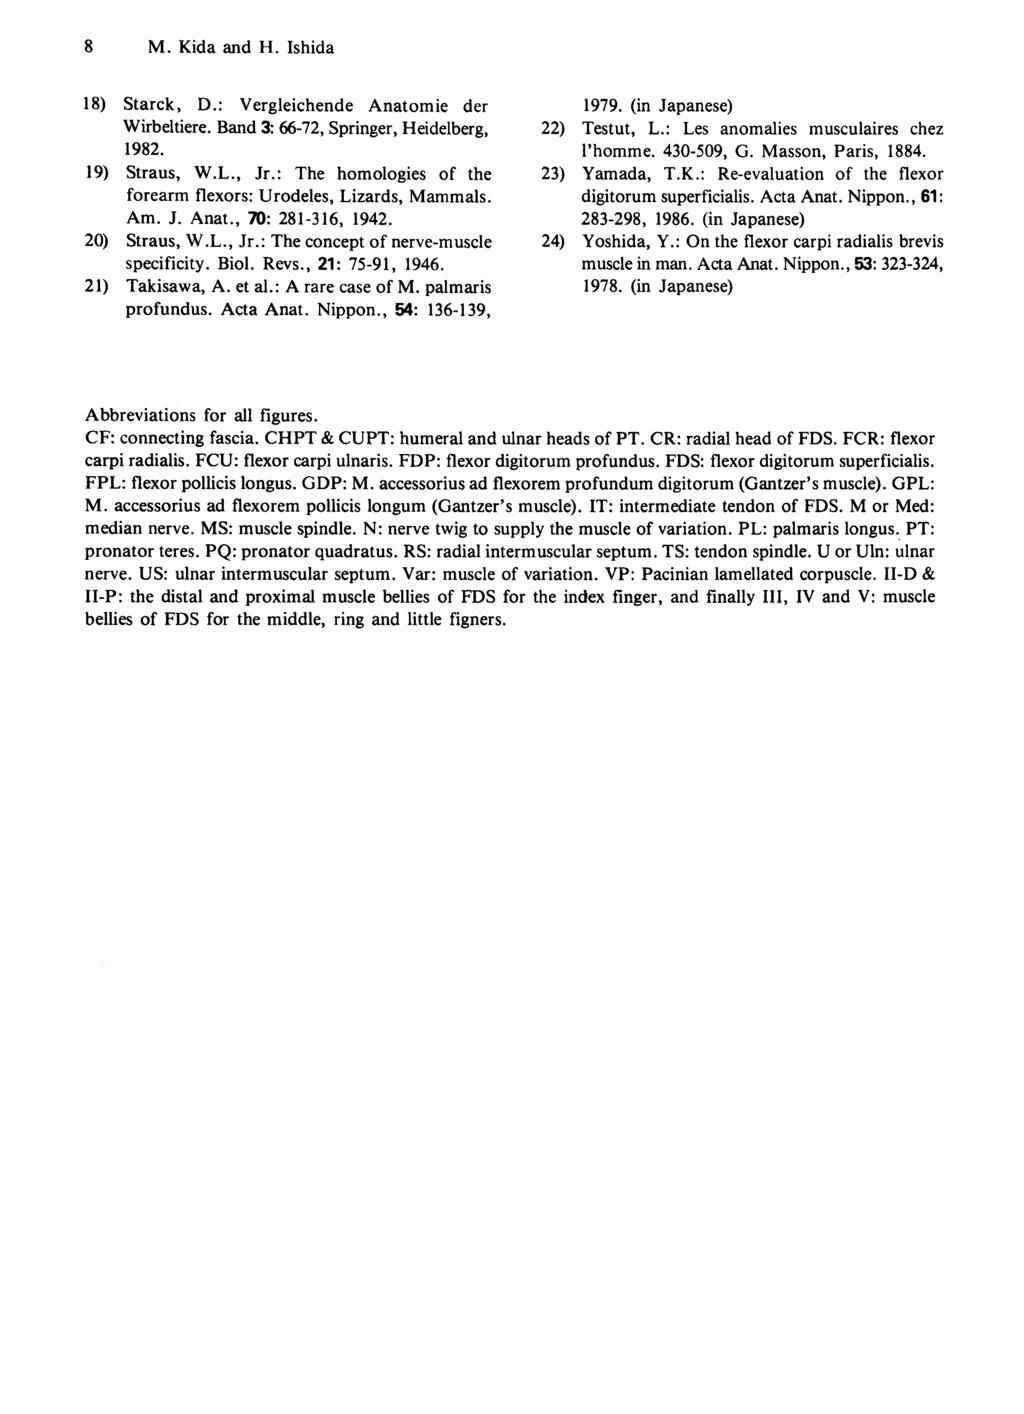 8 M. Kida and H. Ishida 18) Starck, D.: Vergleichende Anatomie der Wirbeltiere. Band 3: 66-72, Springer, Heidelberg, 1982. 19) Straus, W.L., Jr.